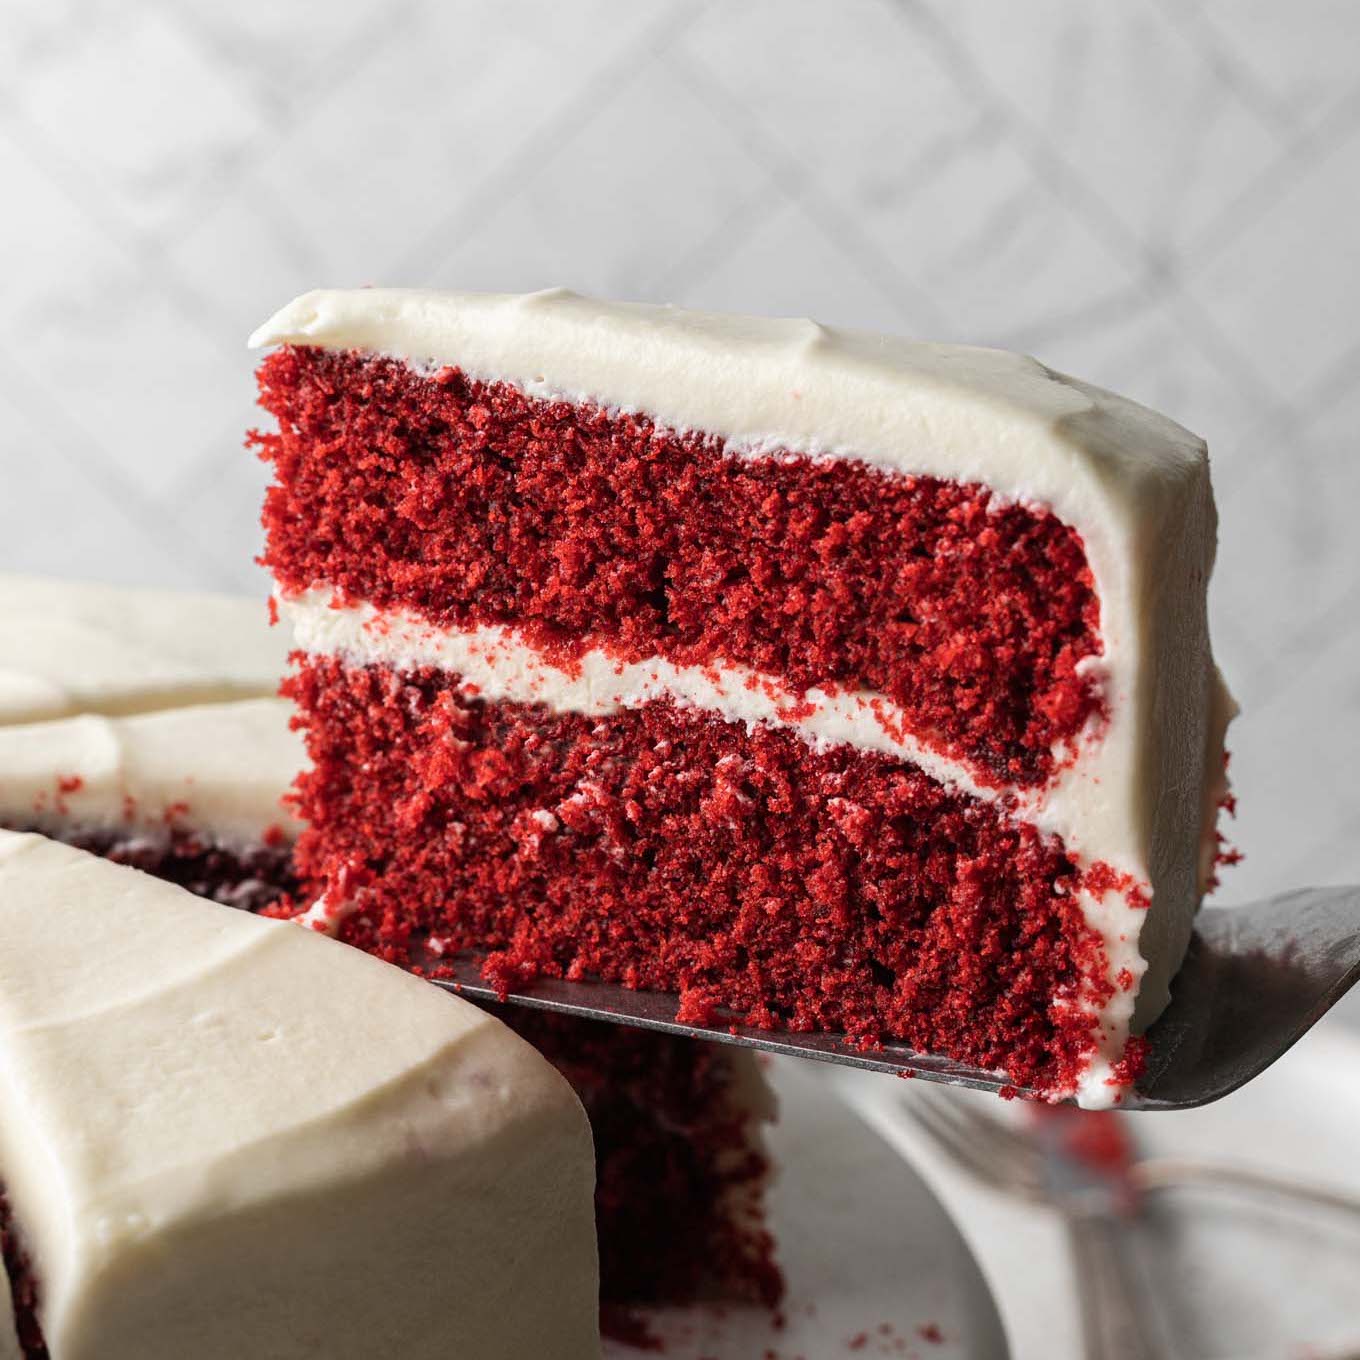 Southern Red Velvet Cake Recipe